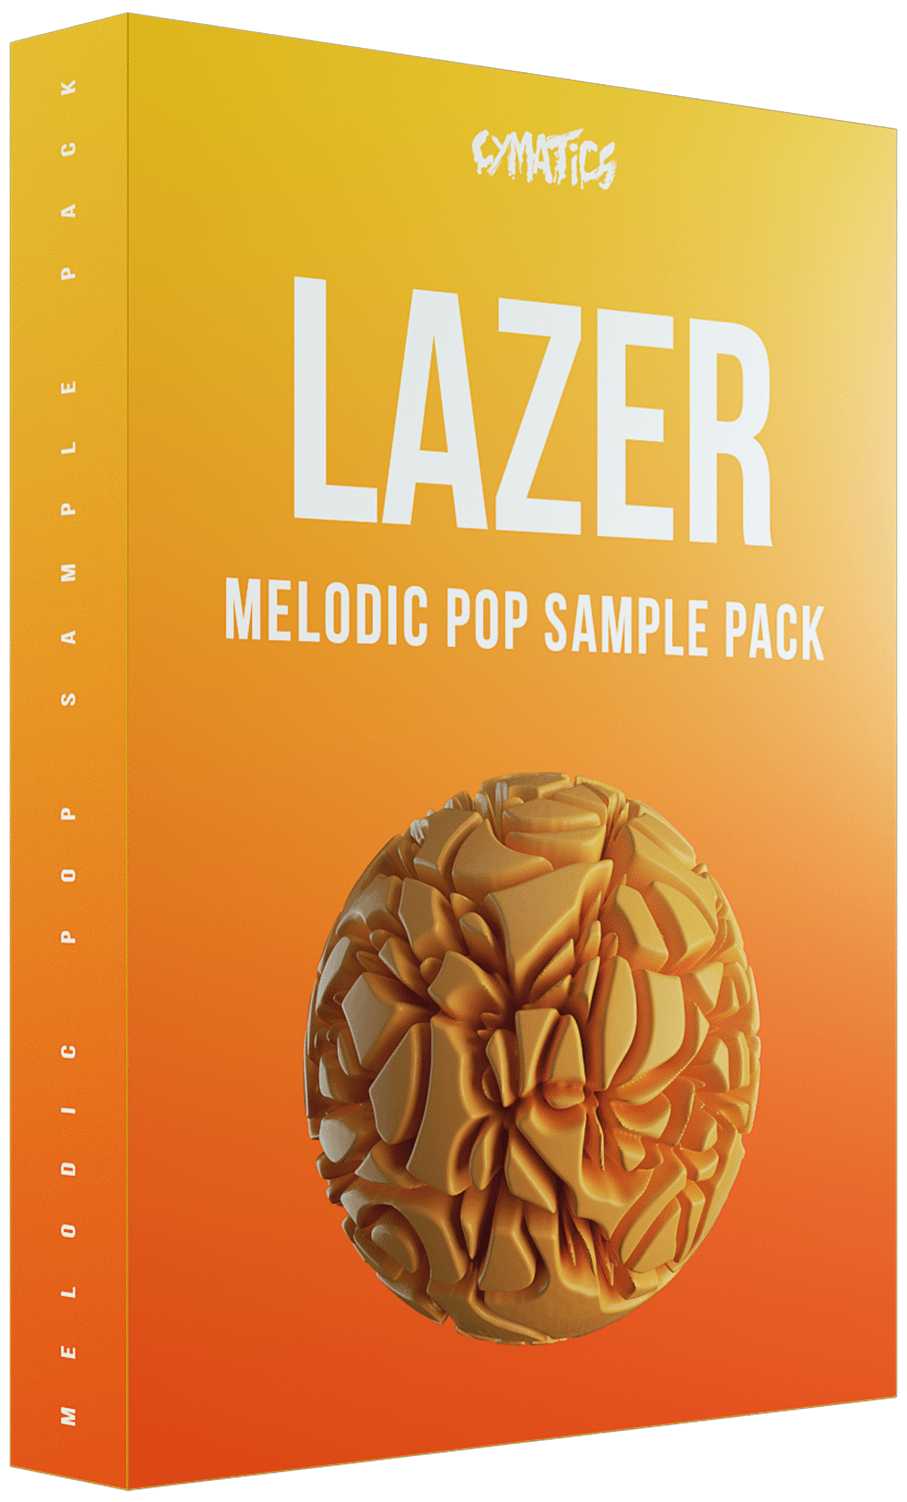 "Lazer" - Major Lazer Type Sample Pack